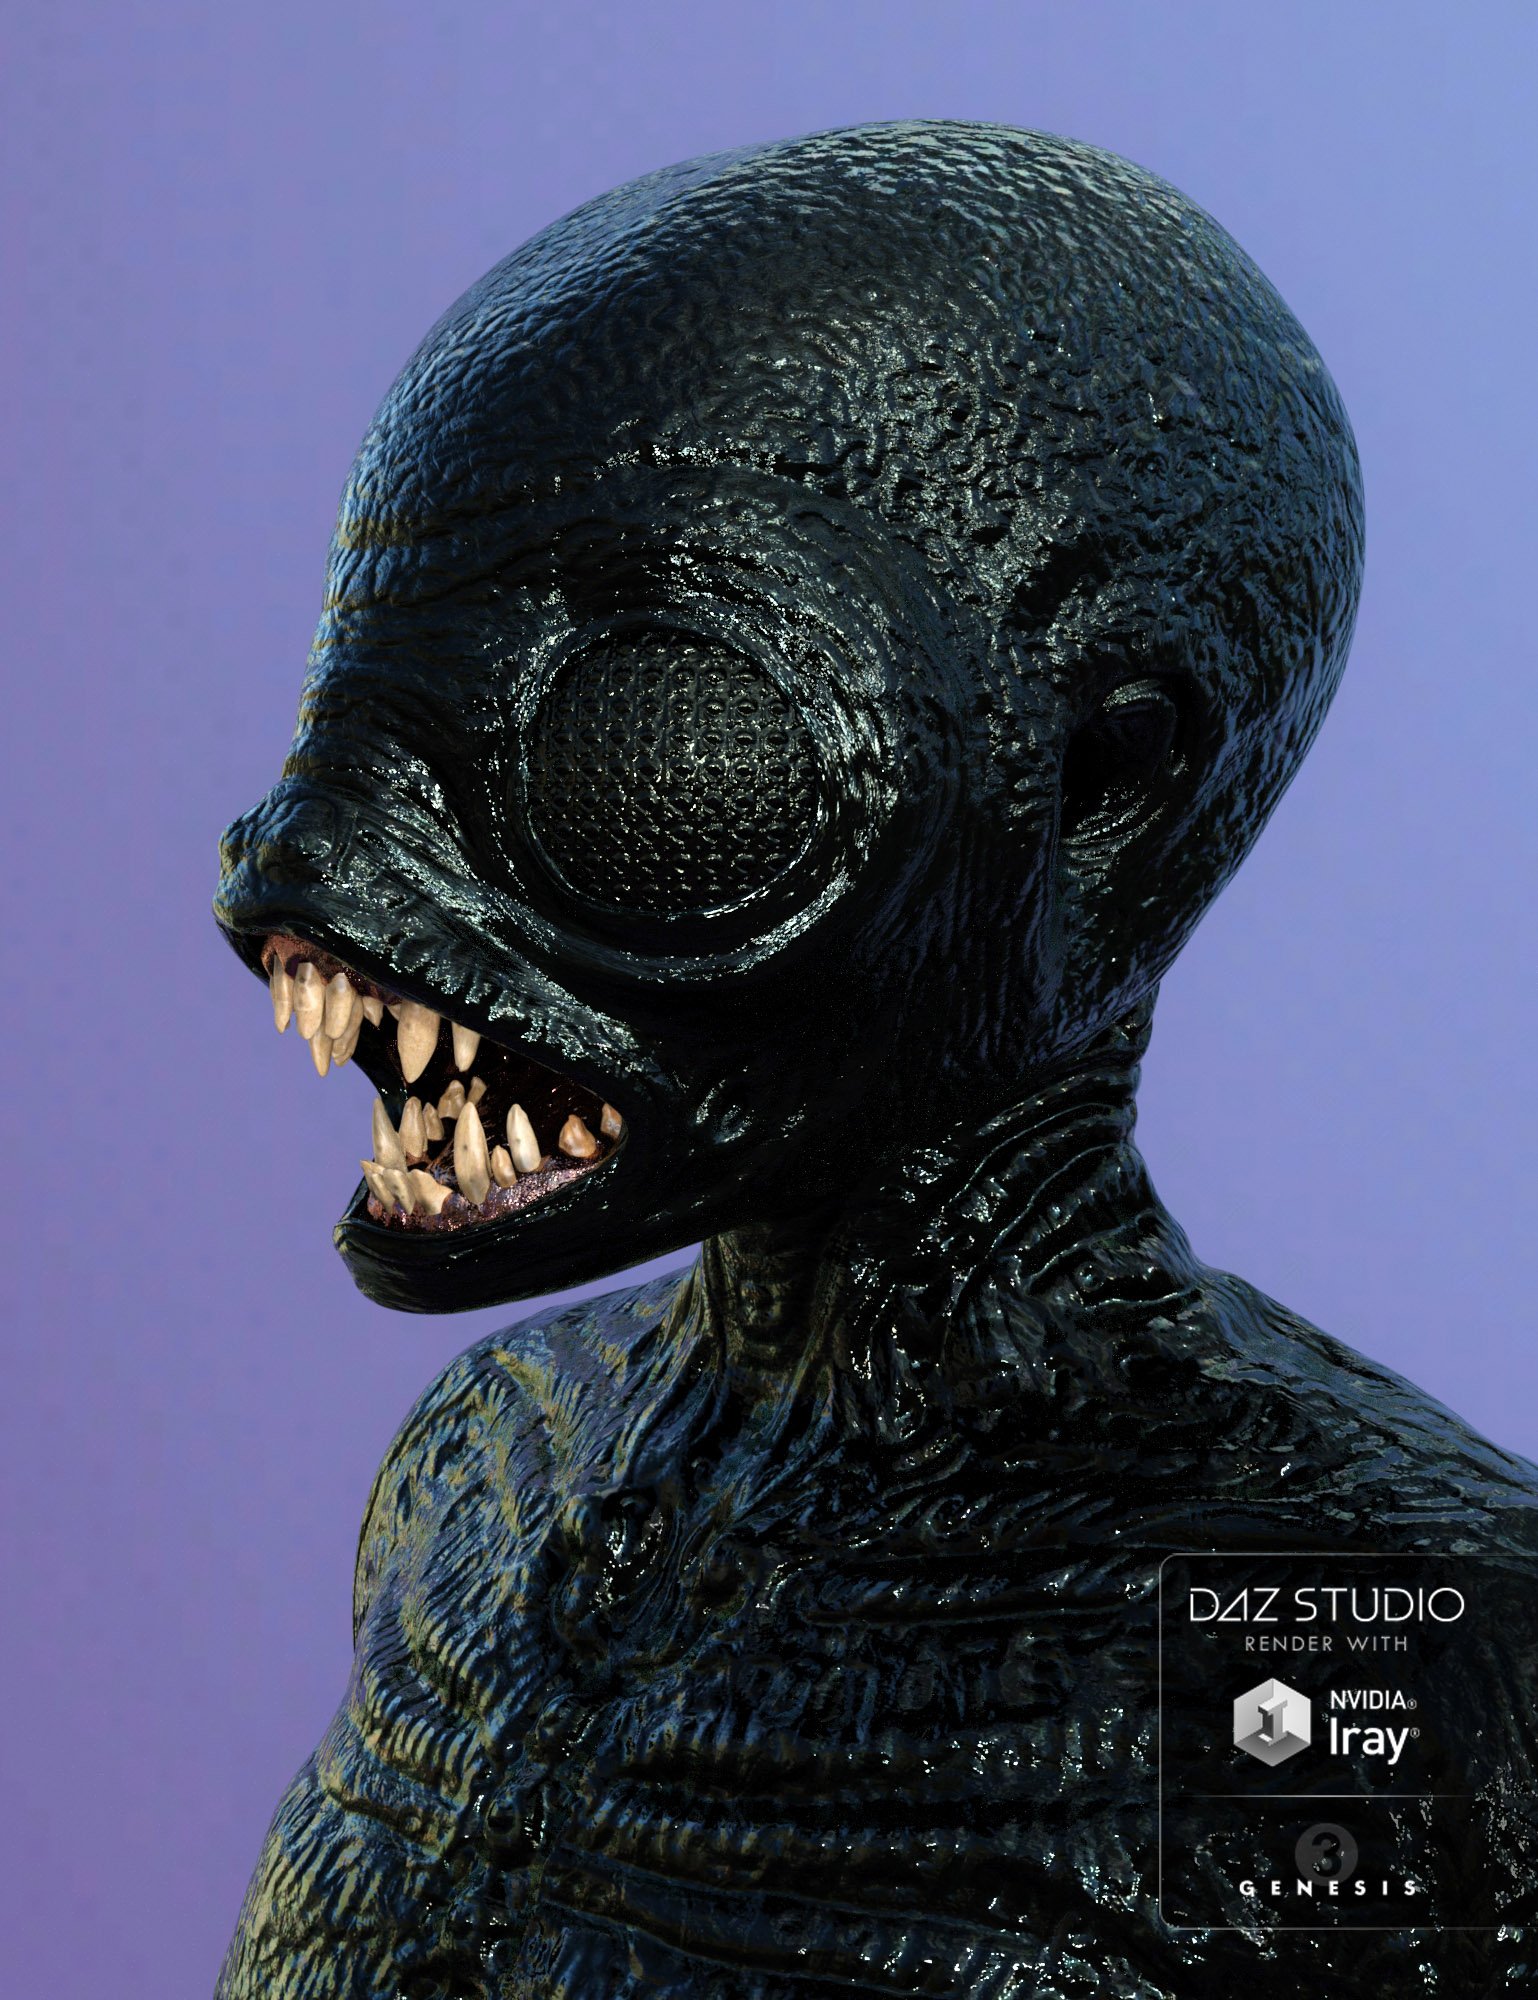 Mutant X HD for Genesis 3 Male by: Oskarsson, 3D Models by Daz 3D